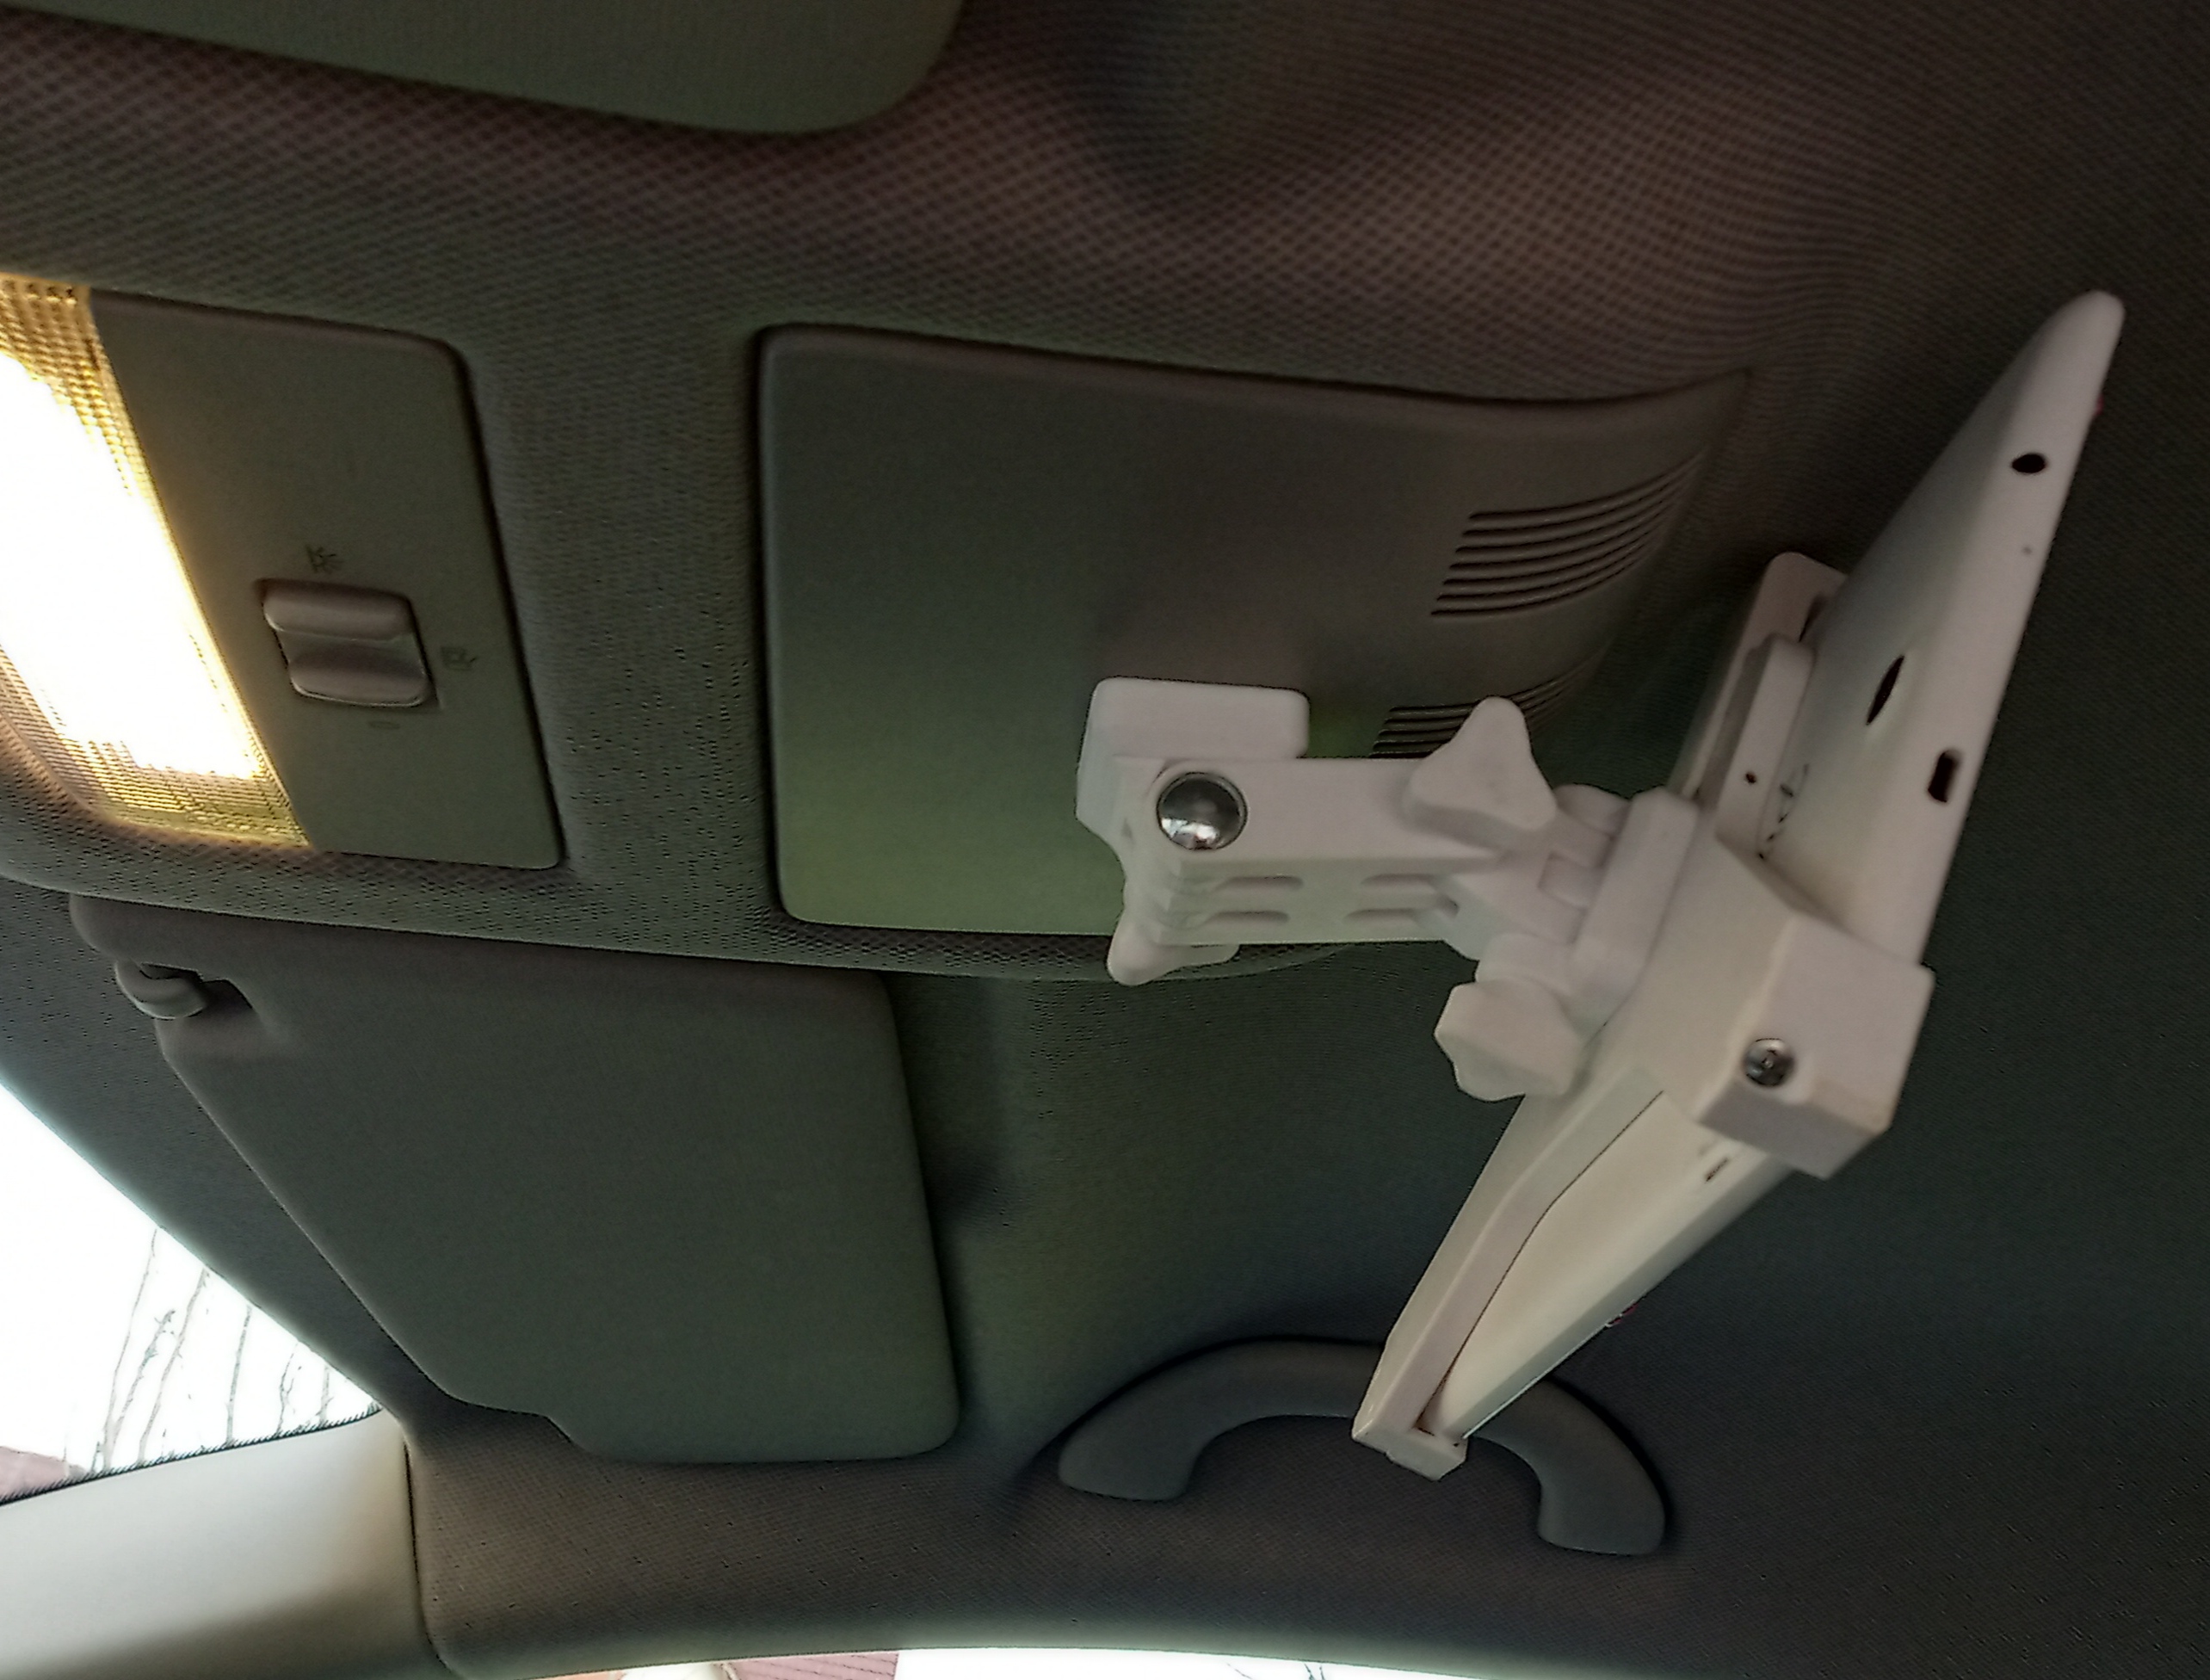 Tablet ceiling holder for car